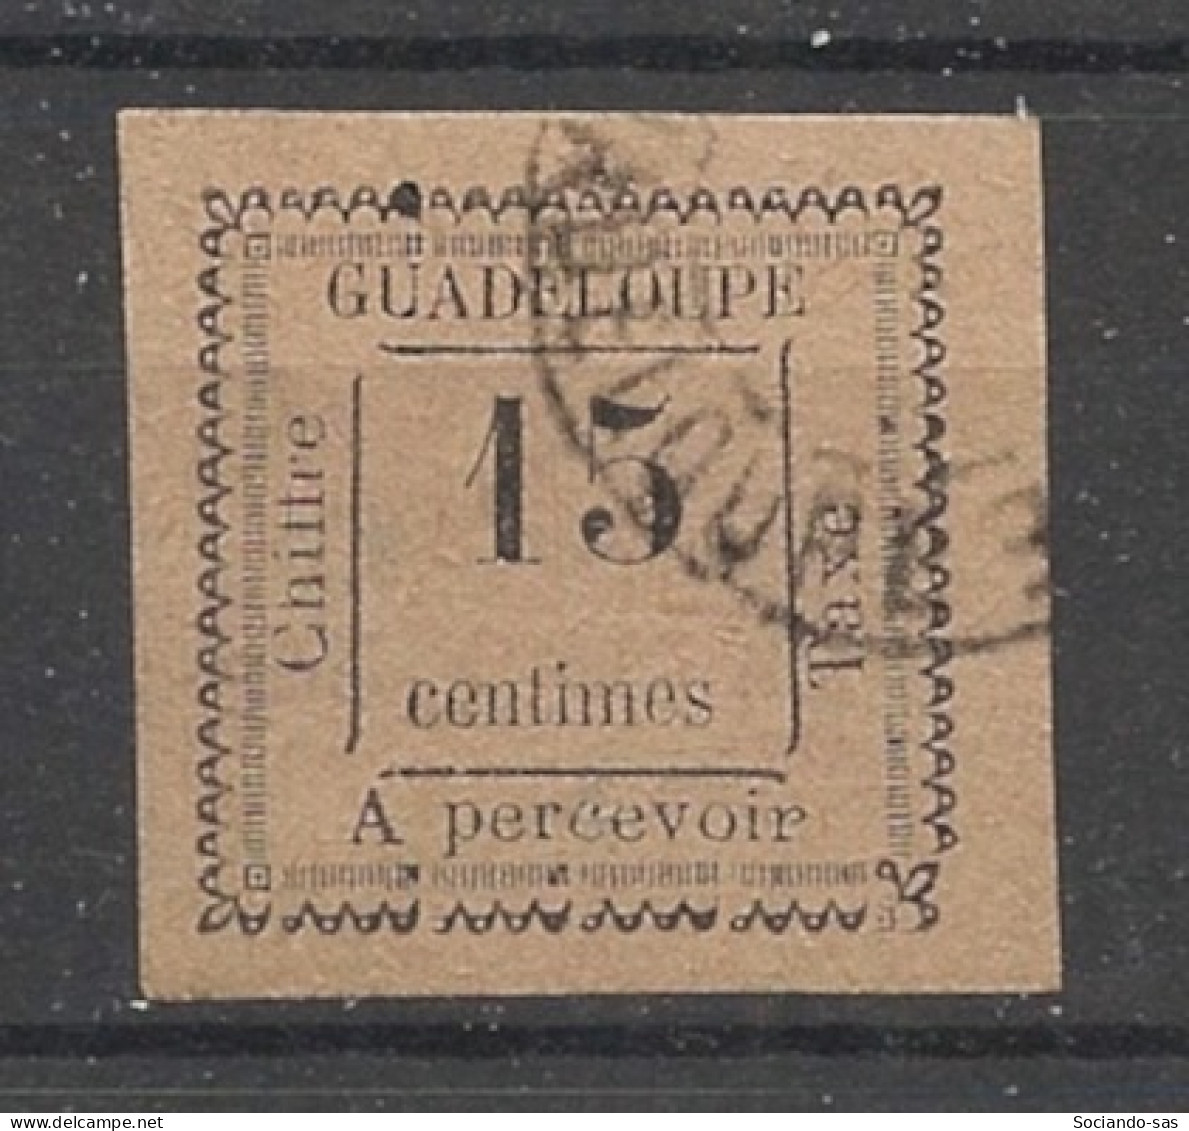 GUADELOUPE - 1884 - Taxe TT N°YT. 8 - 15c Violet - Oblitéré / Used - Oblitérés